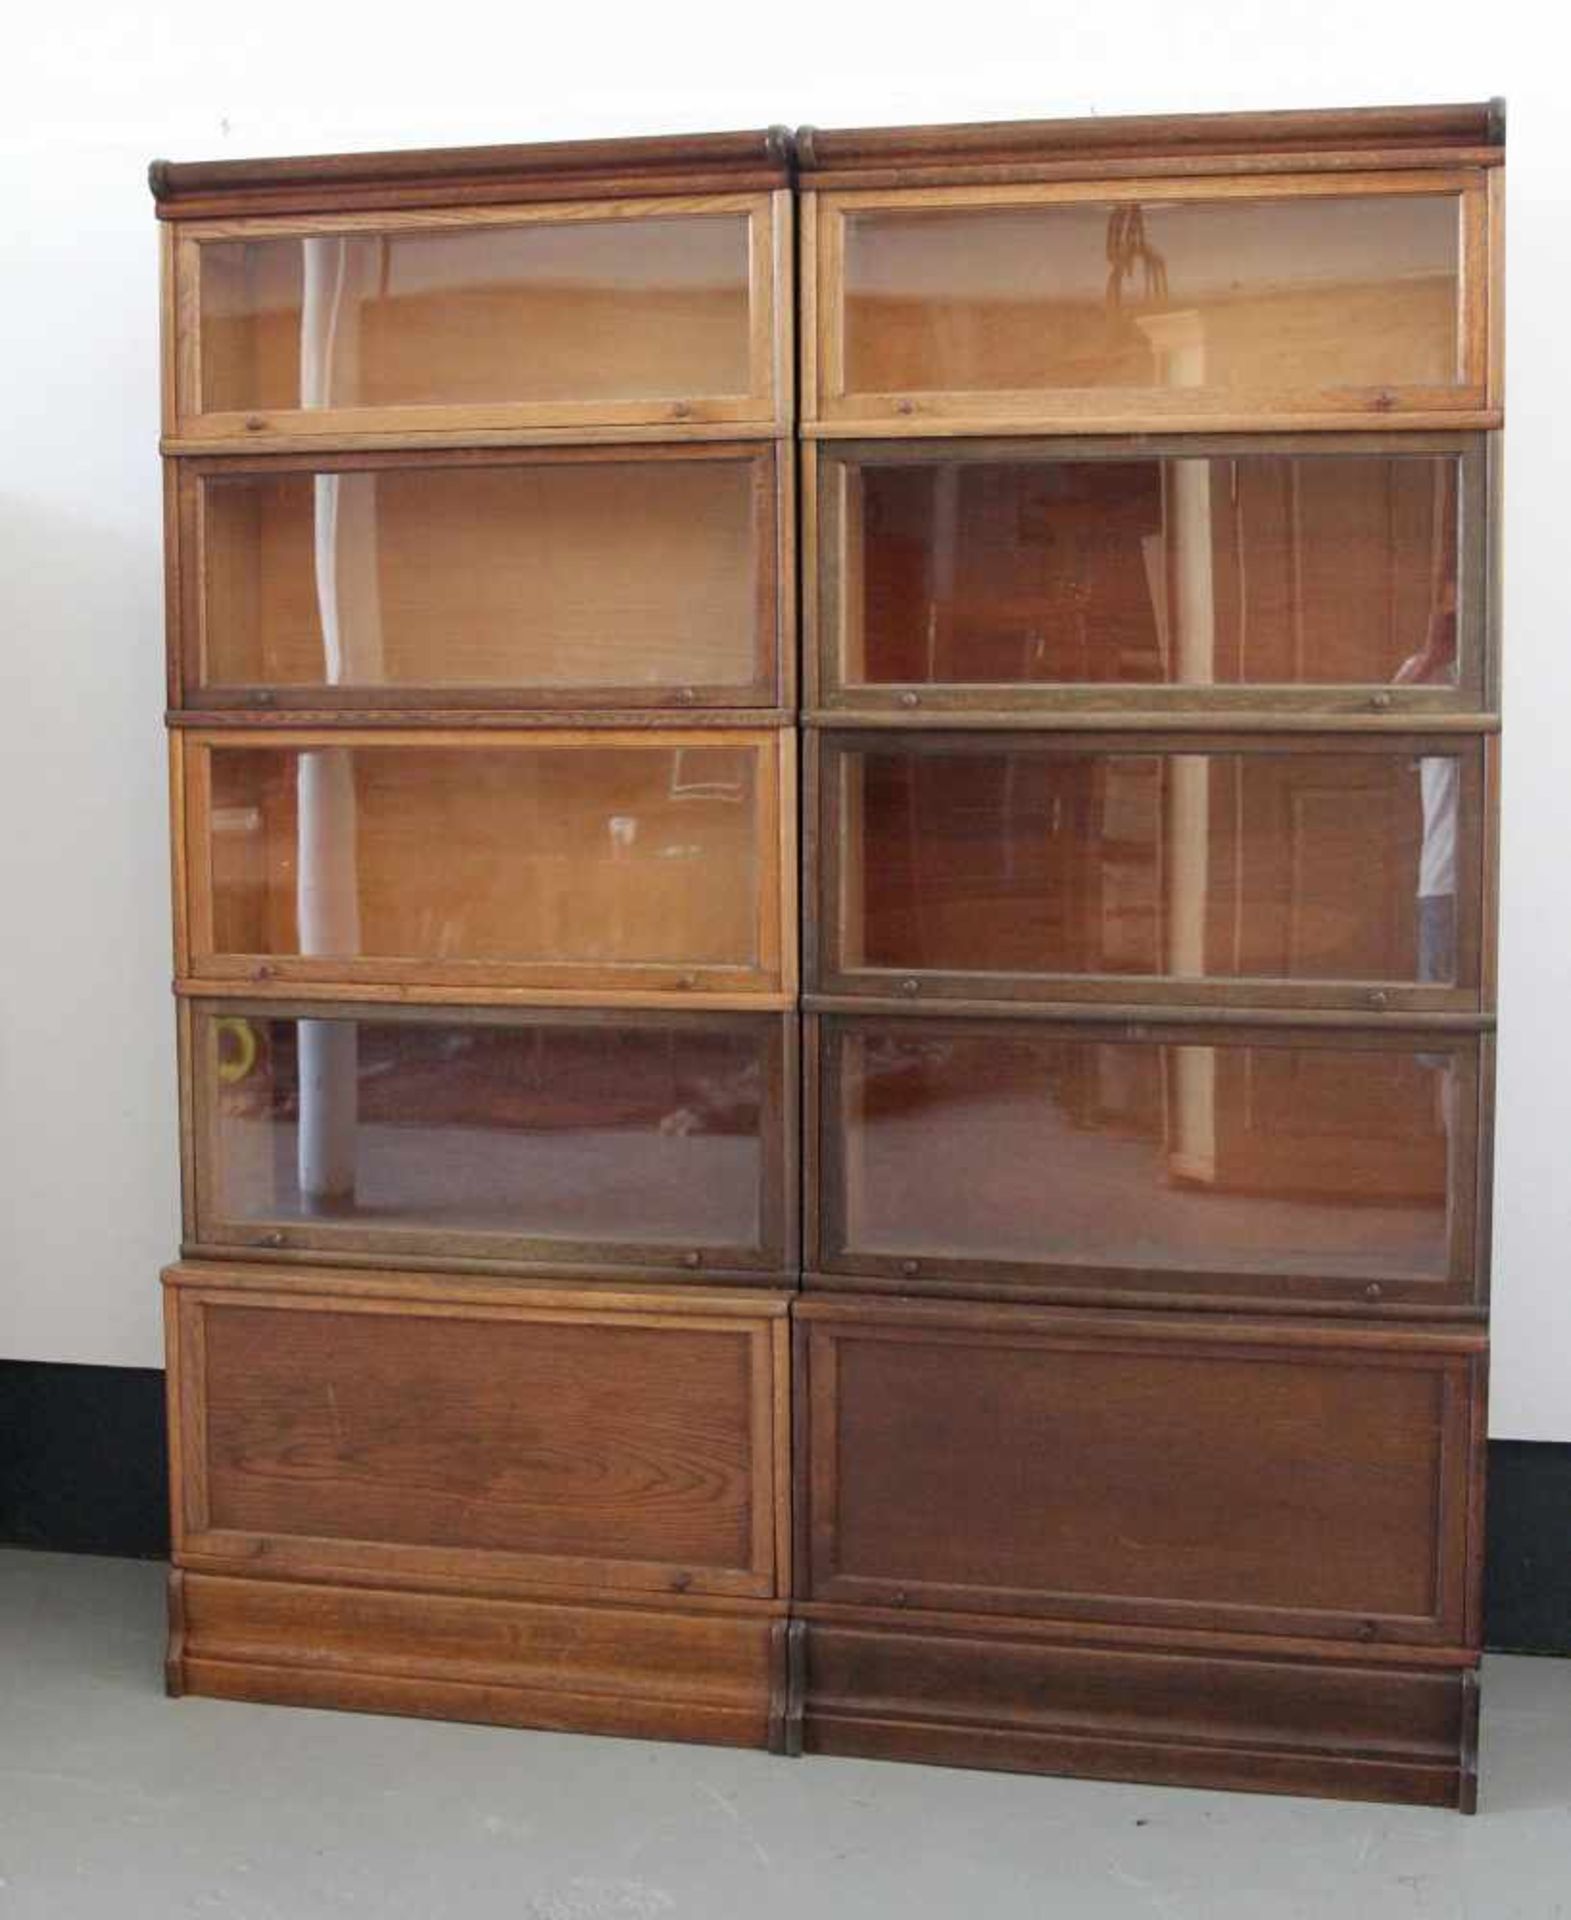 Zwei Leitz-Bücherregale, Modulsystem, Eichenholz, 1. H. 20. Jh.Basis mit Klappe aus Holz, darauf